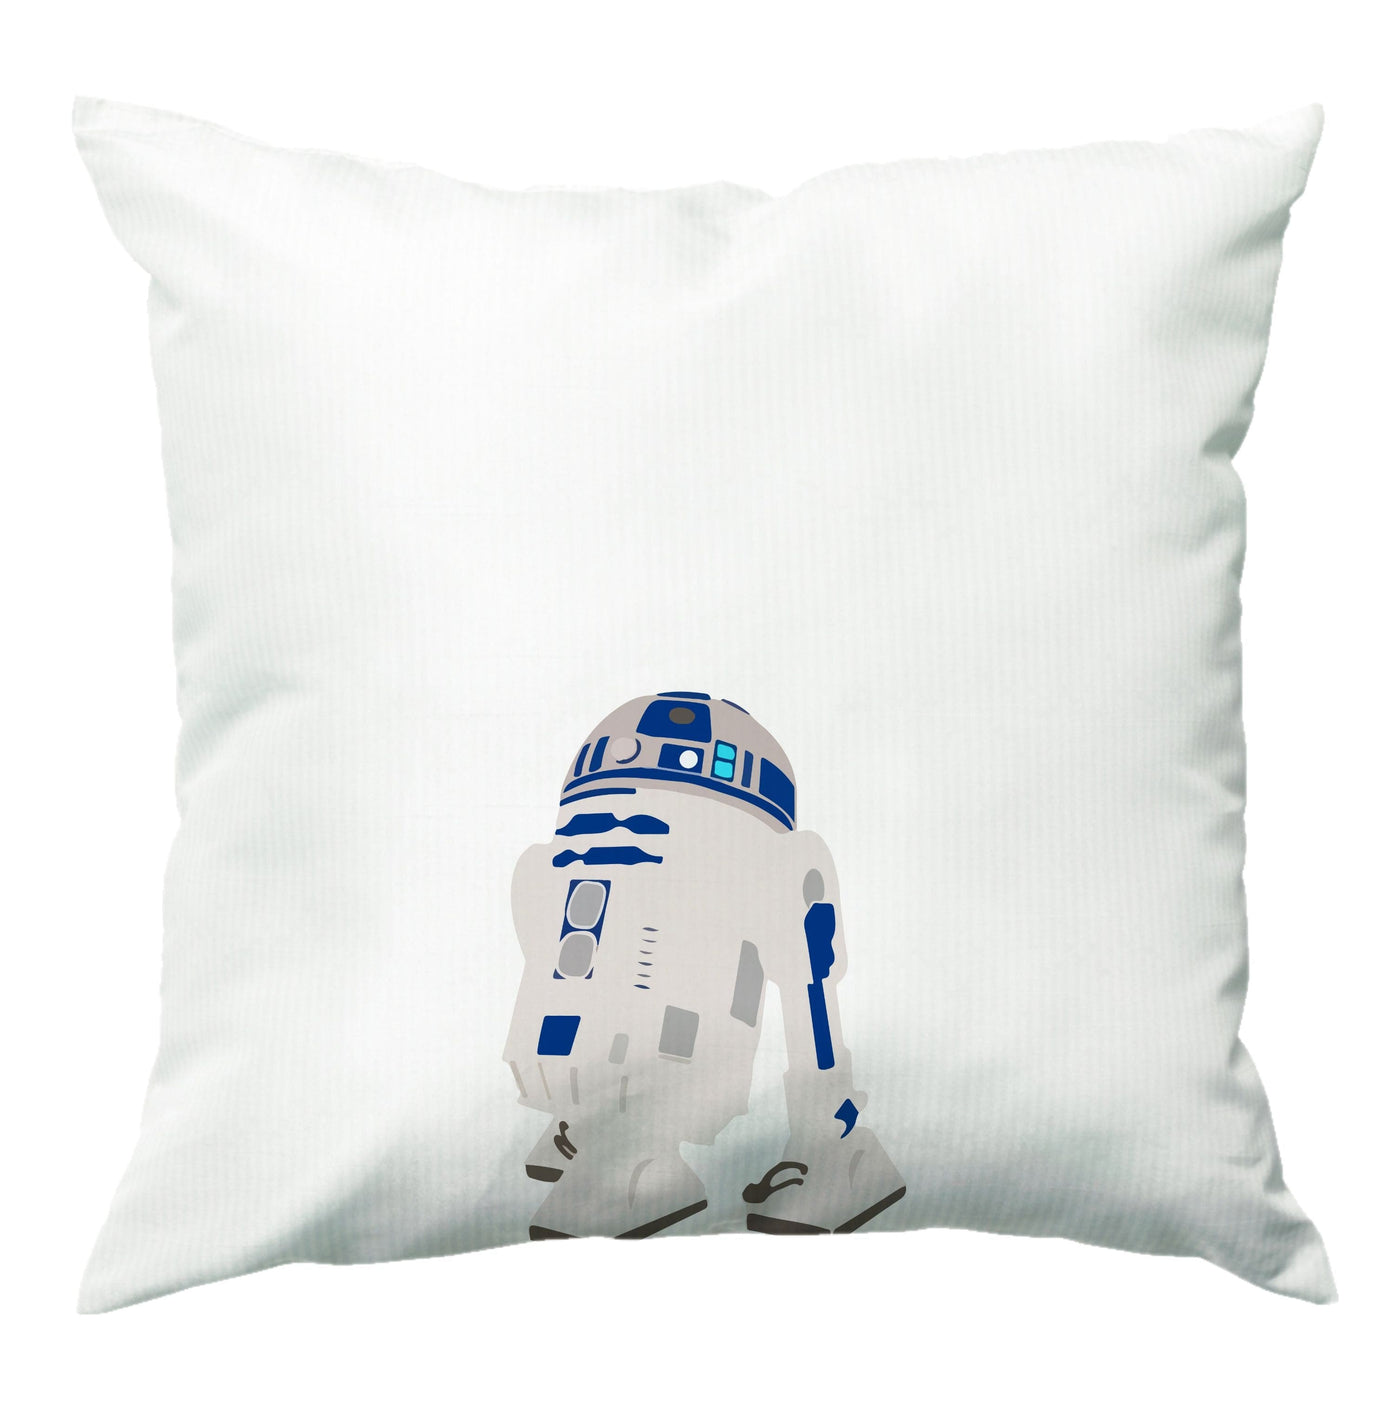 R2D2 - Star Wars Cushion